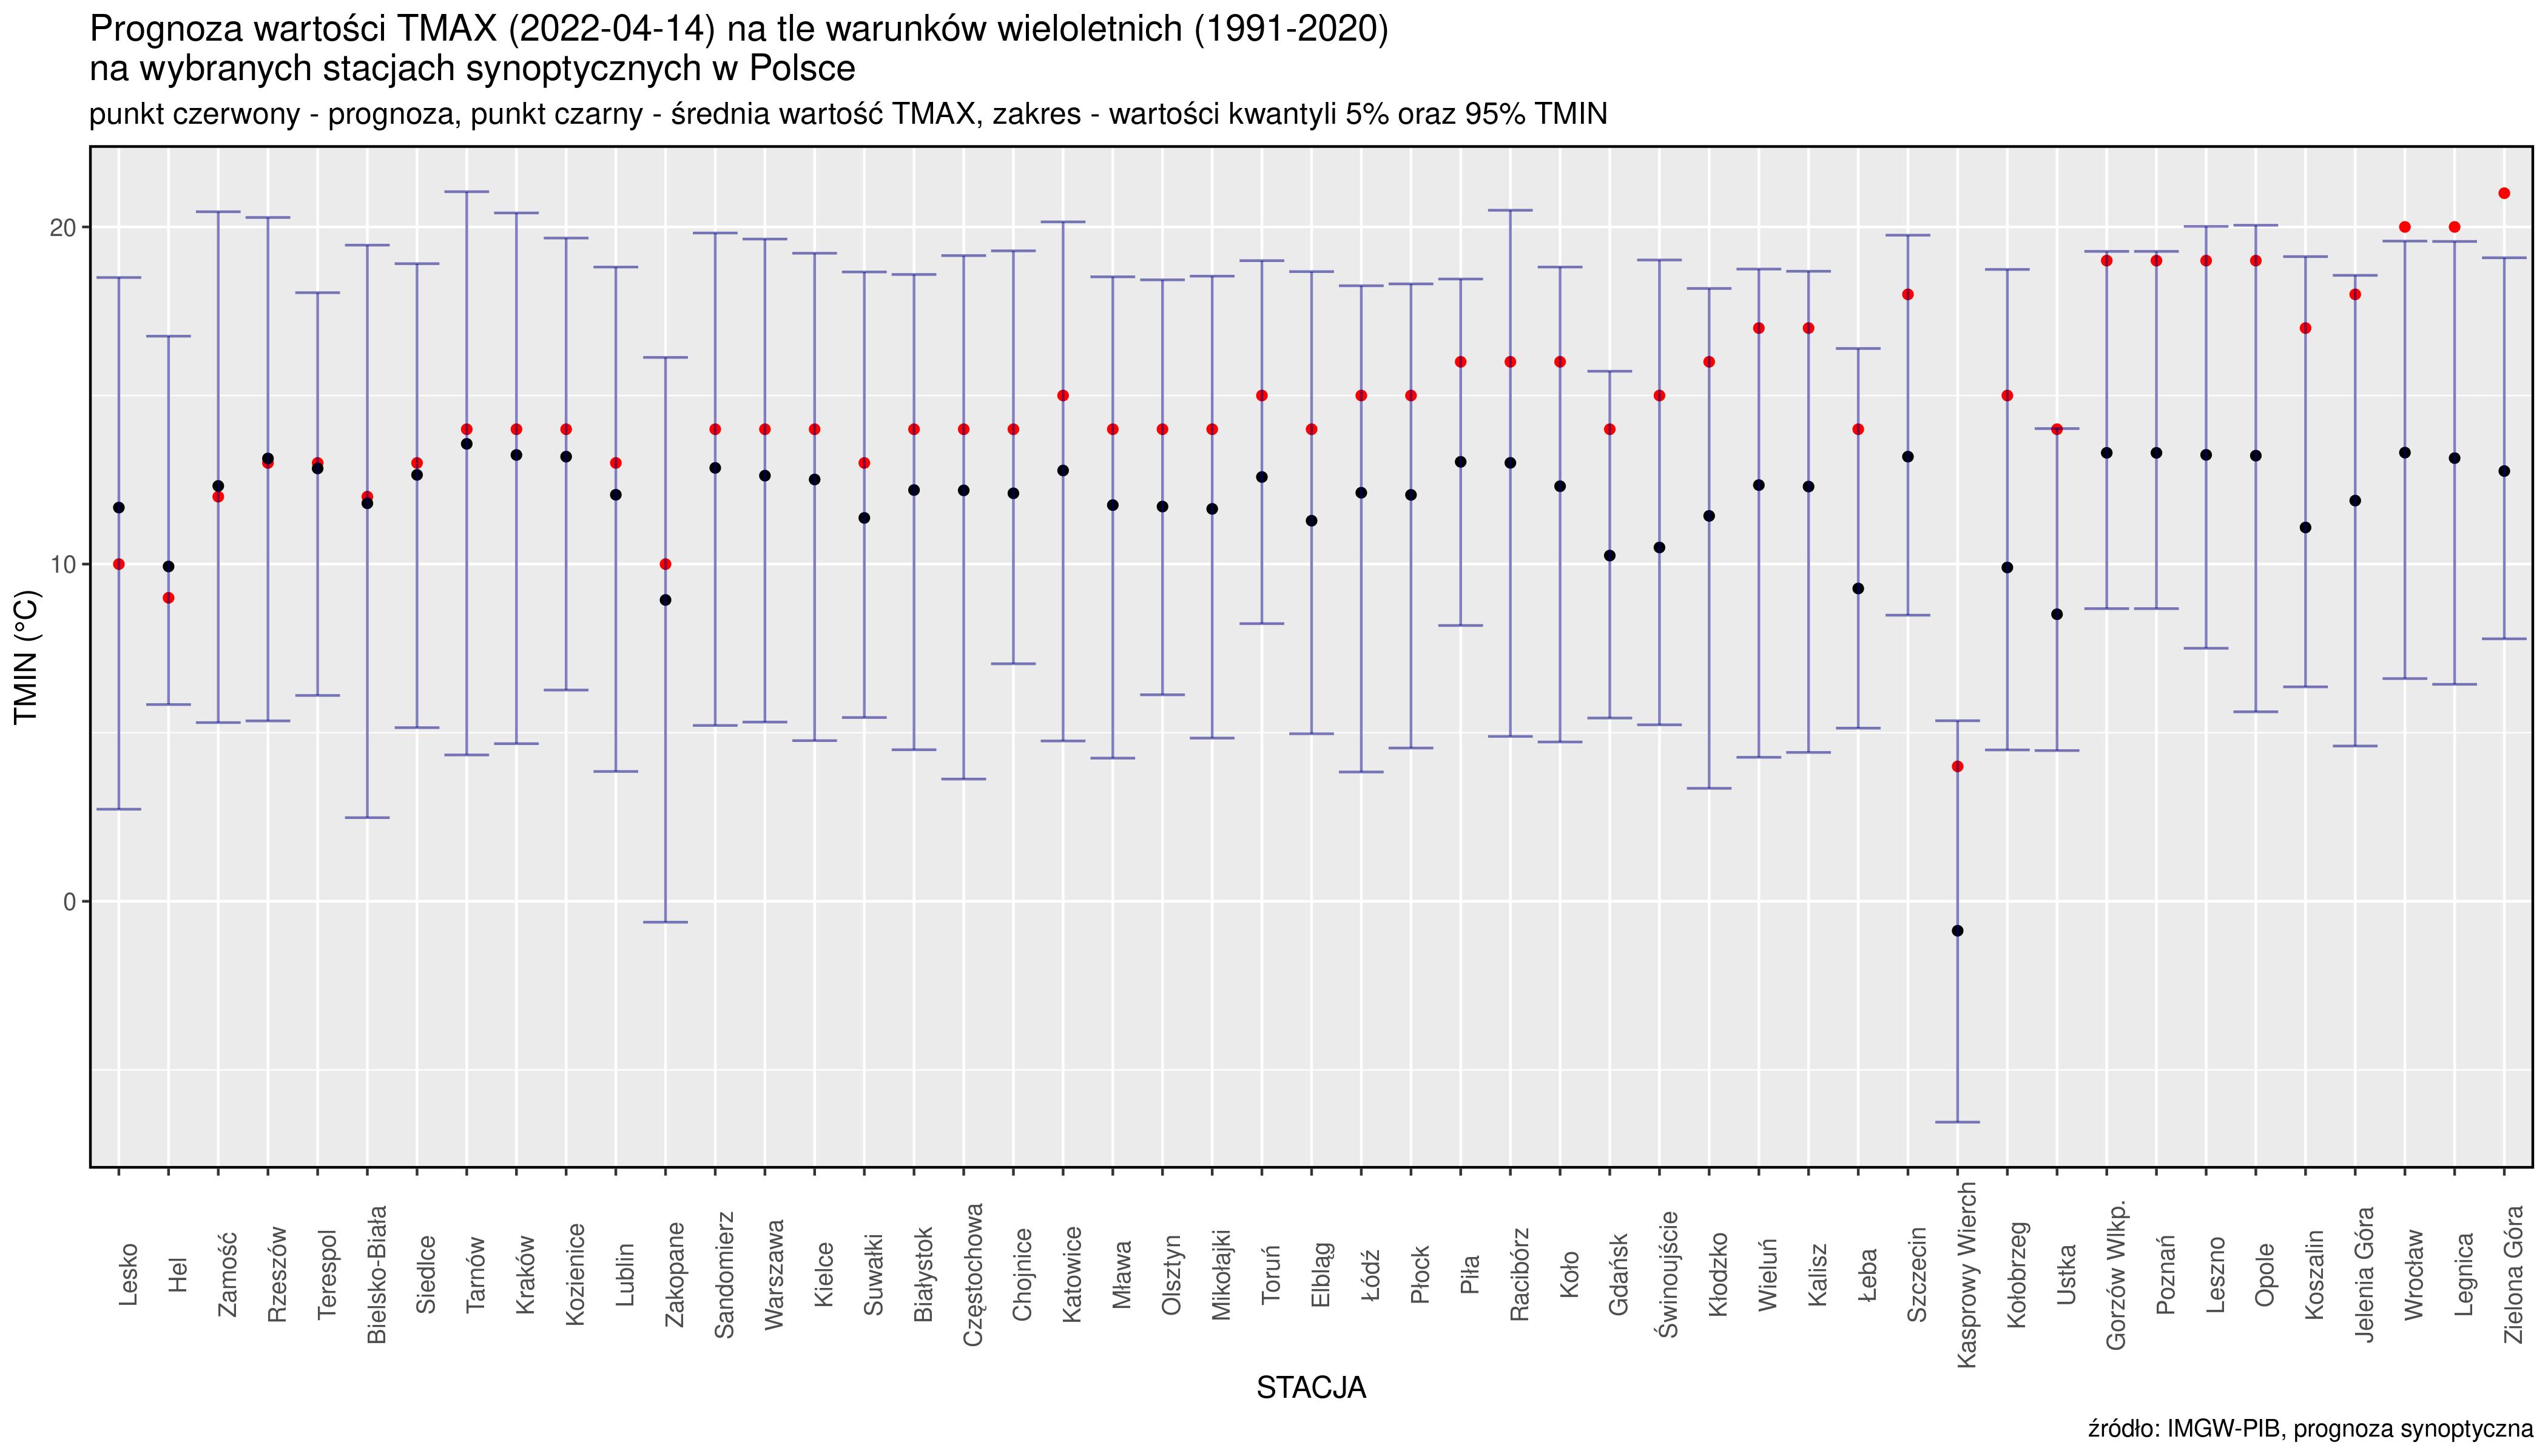 Prognoza wartości TMAX (2022-04-14) na tle warunków wieloletnich (1991-2020). Kolejność stacji według różnicy TMAX  prognoza – TMAX z wielolecia.